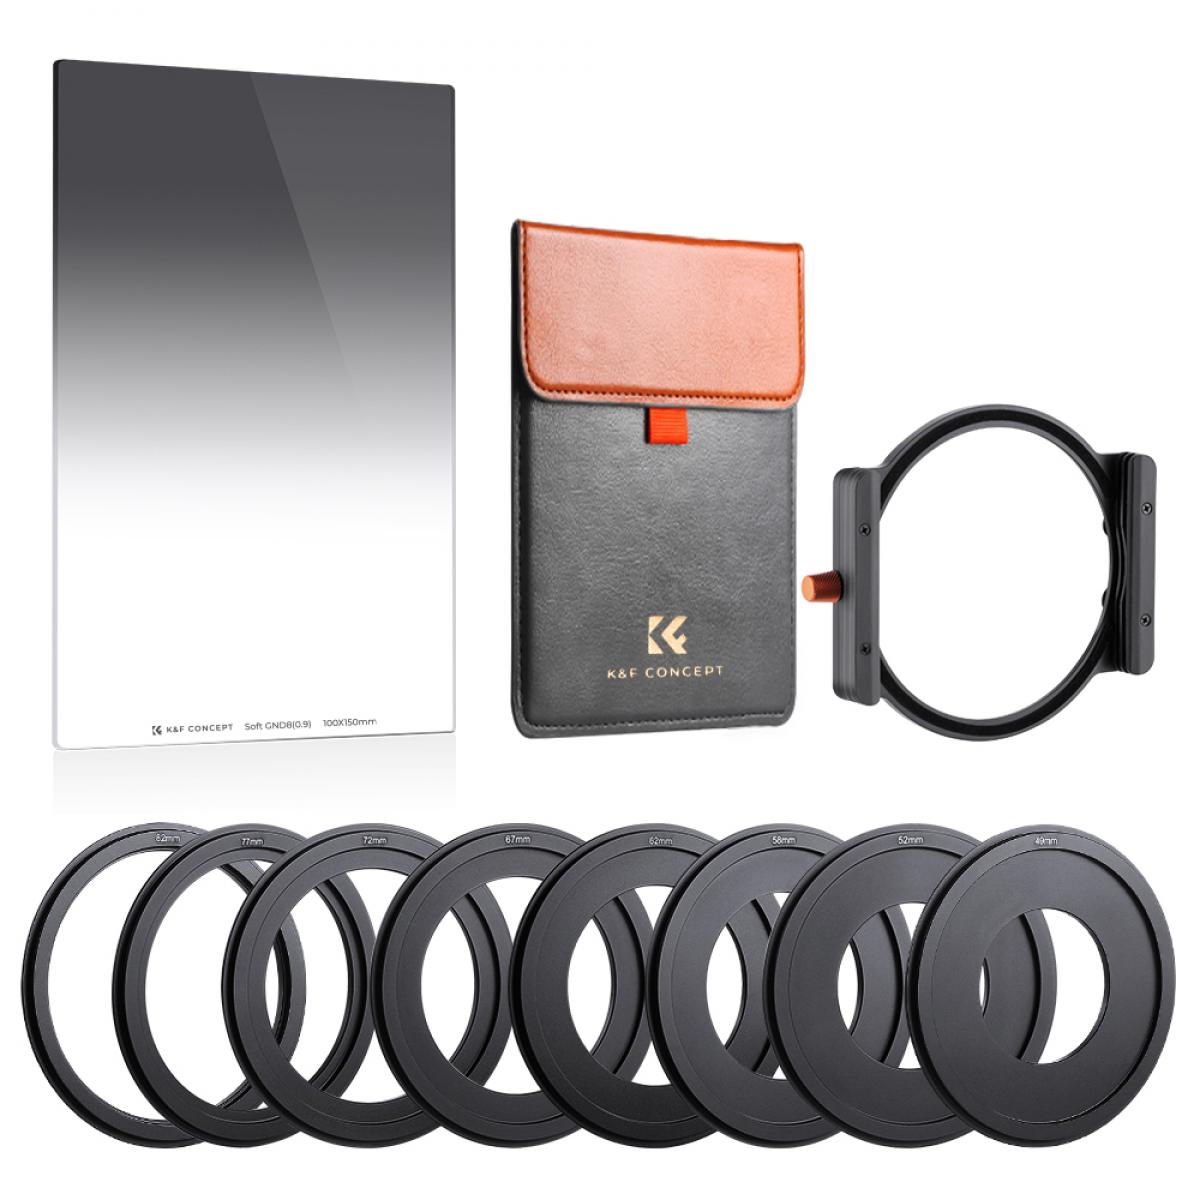 Square Filter Holder Lens Hood Black Ring Adapter 8Pcs/Set Square Filter kit Complete Set for ND2 ND4 ND8 ND16 for Cokin